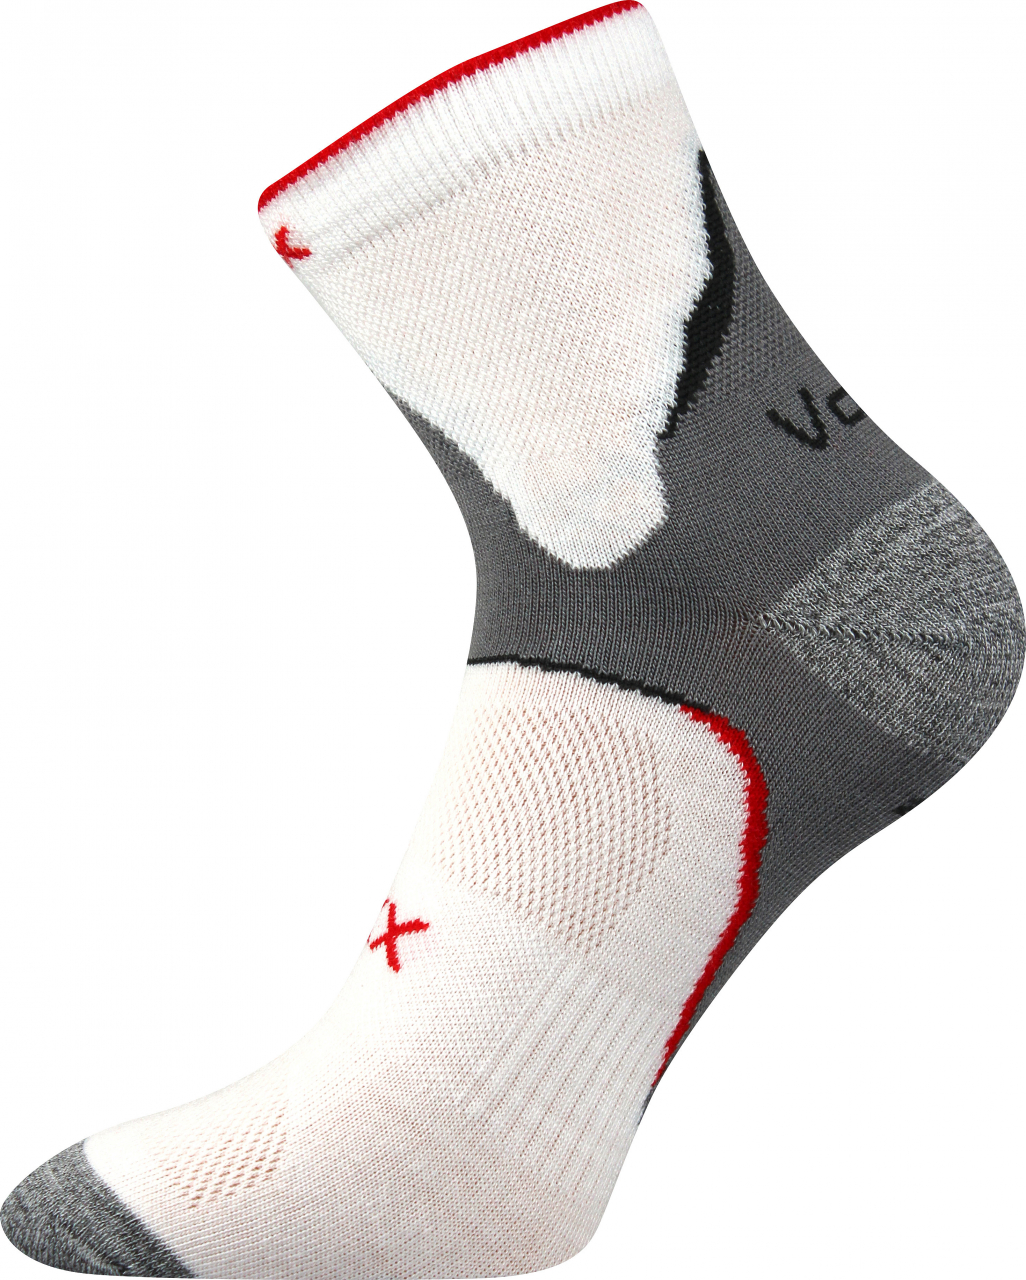 Ponožky antibakteriální Voxx Maxter silproX - bílé-šedé, 39-42